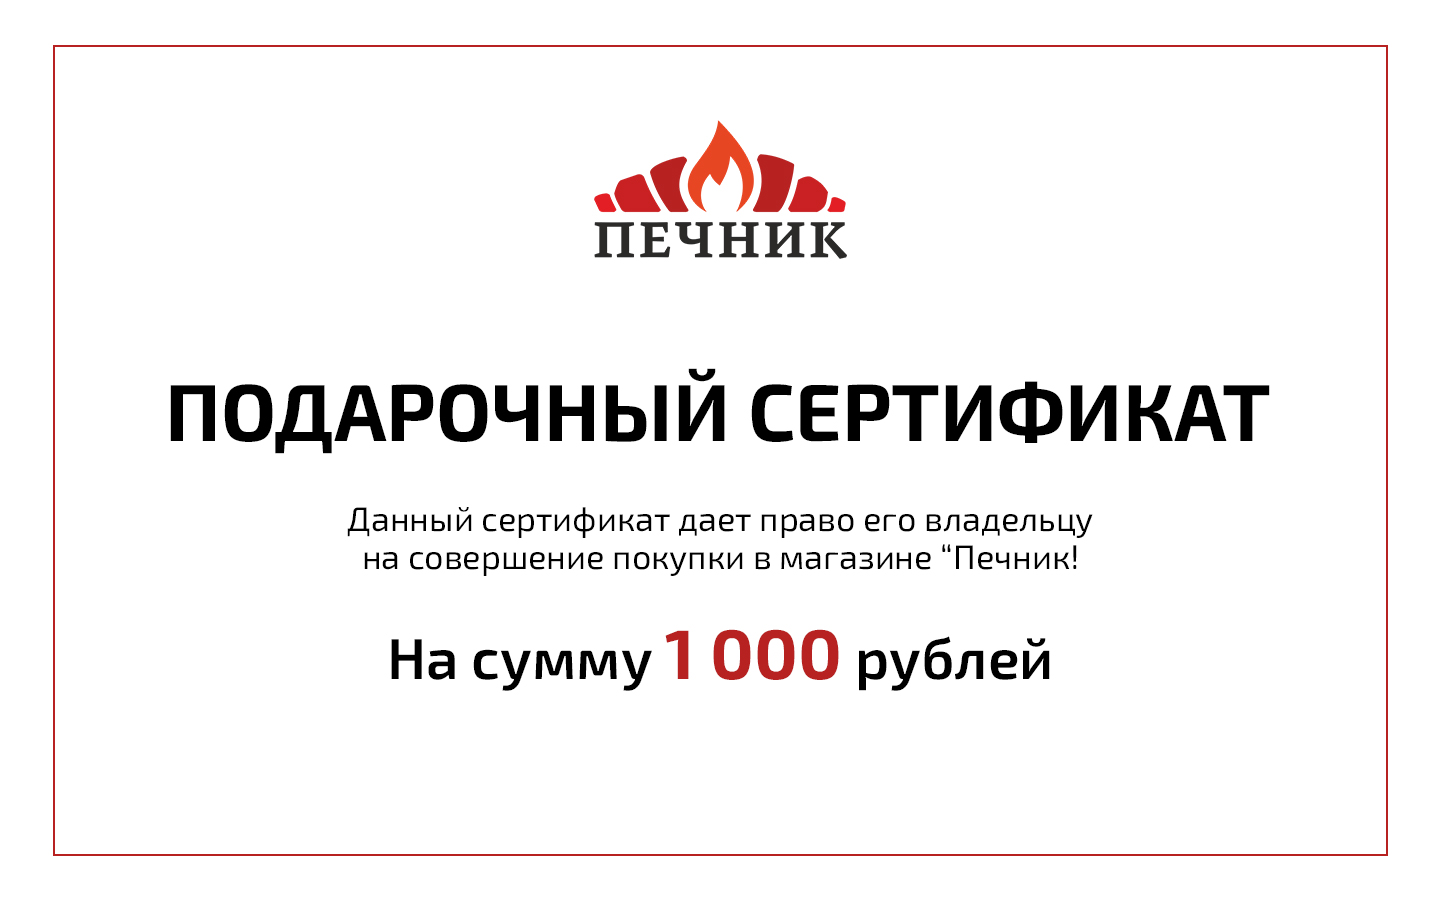 Сертификат на 20000 рублей